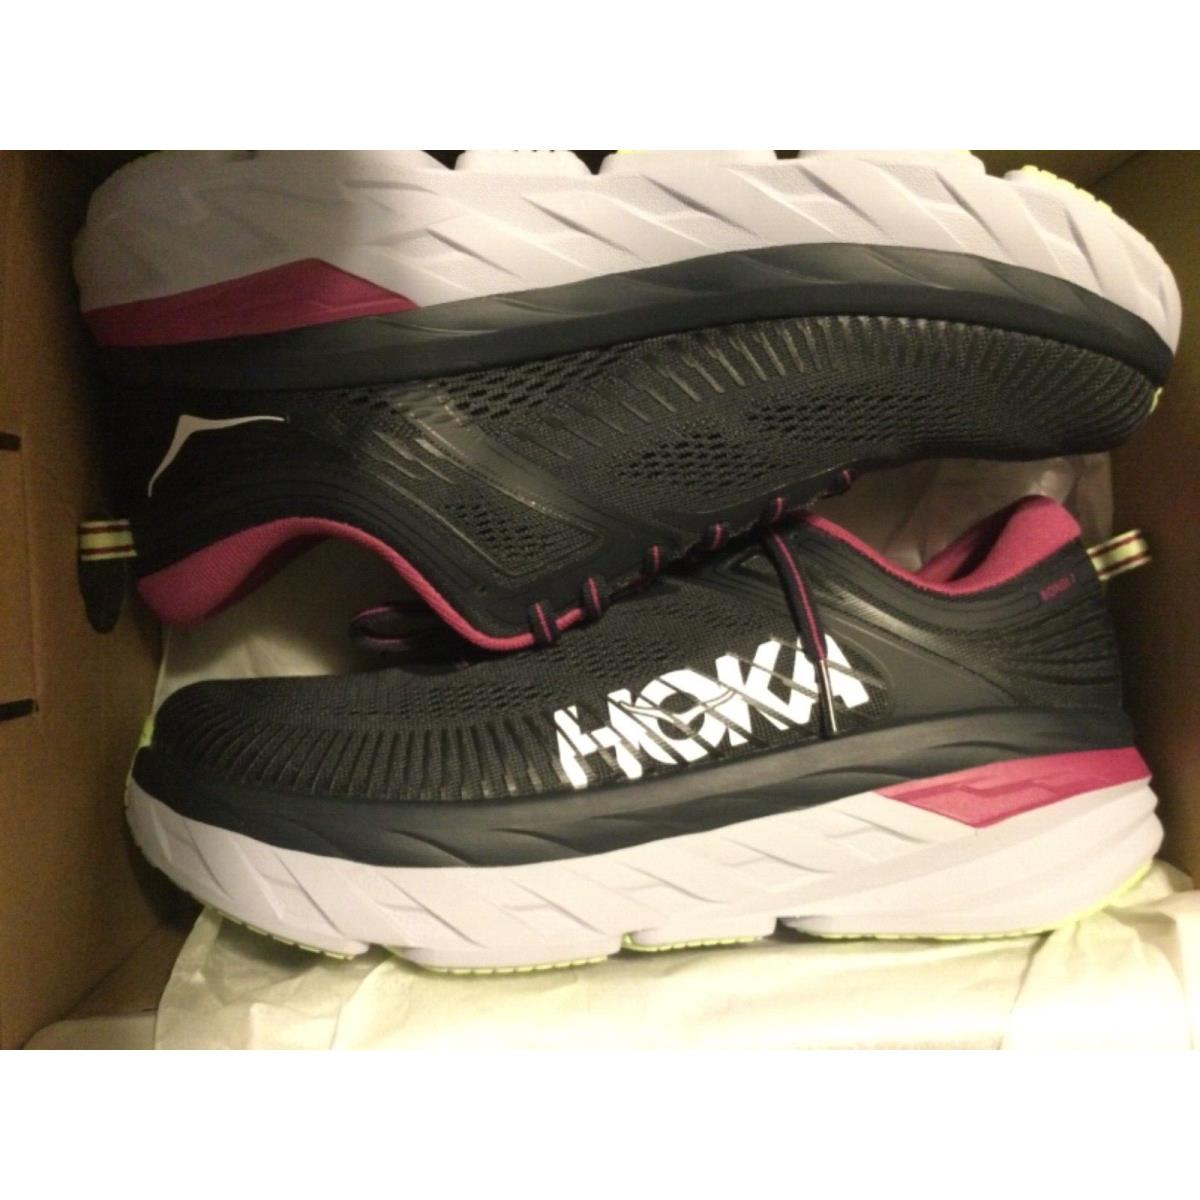 Hoka One One Bondi 7 Graphite Pink Black Running Shoe Womens 10.5 B